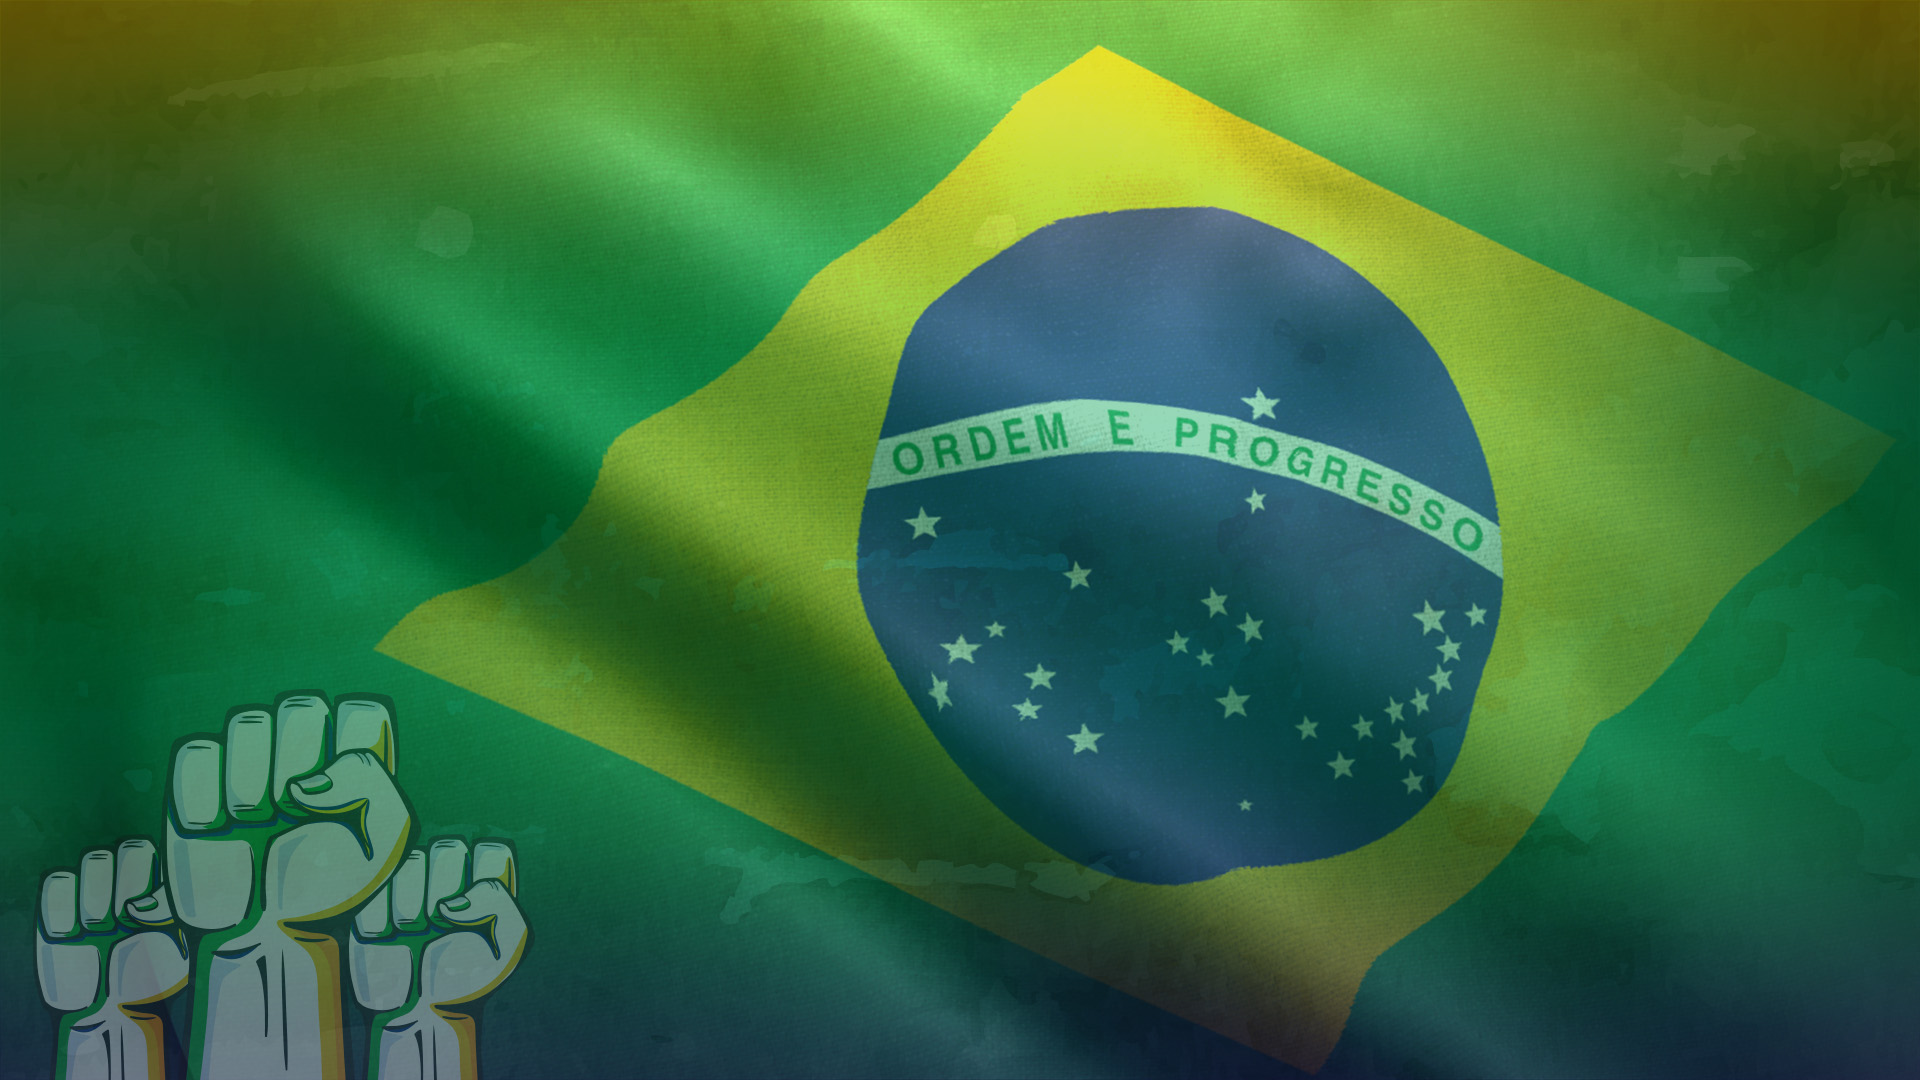 Aposta Eleições Presidente do Brasil | Dicas e Probabilidades | LeoVegas